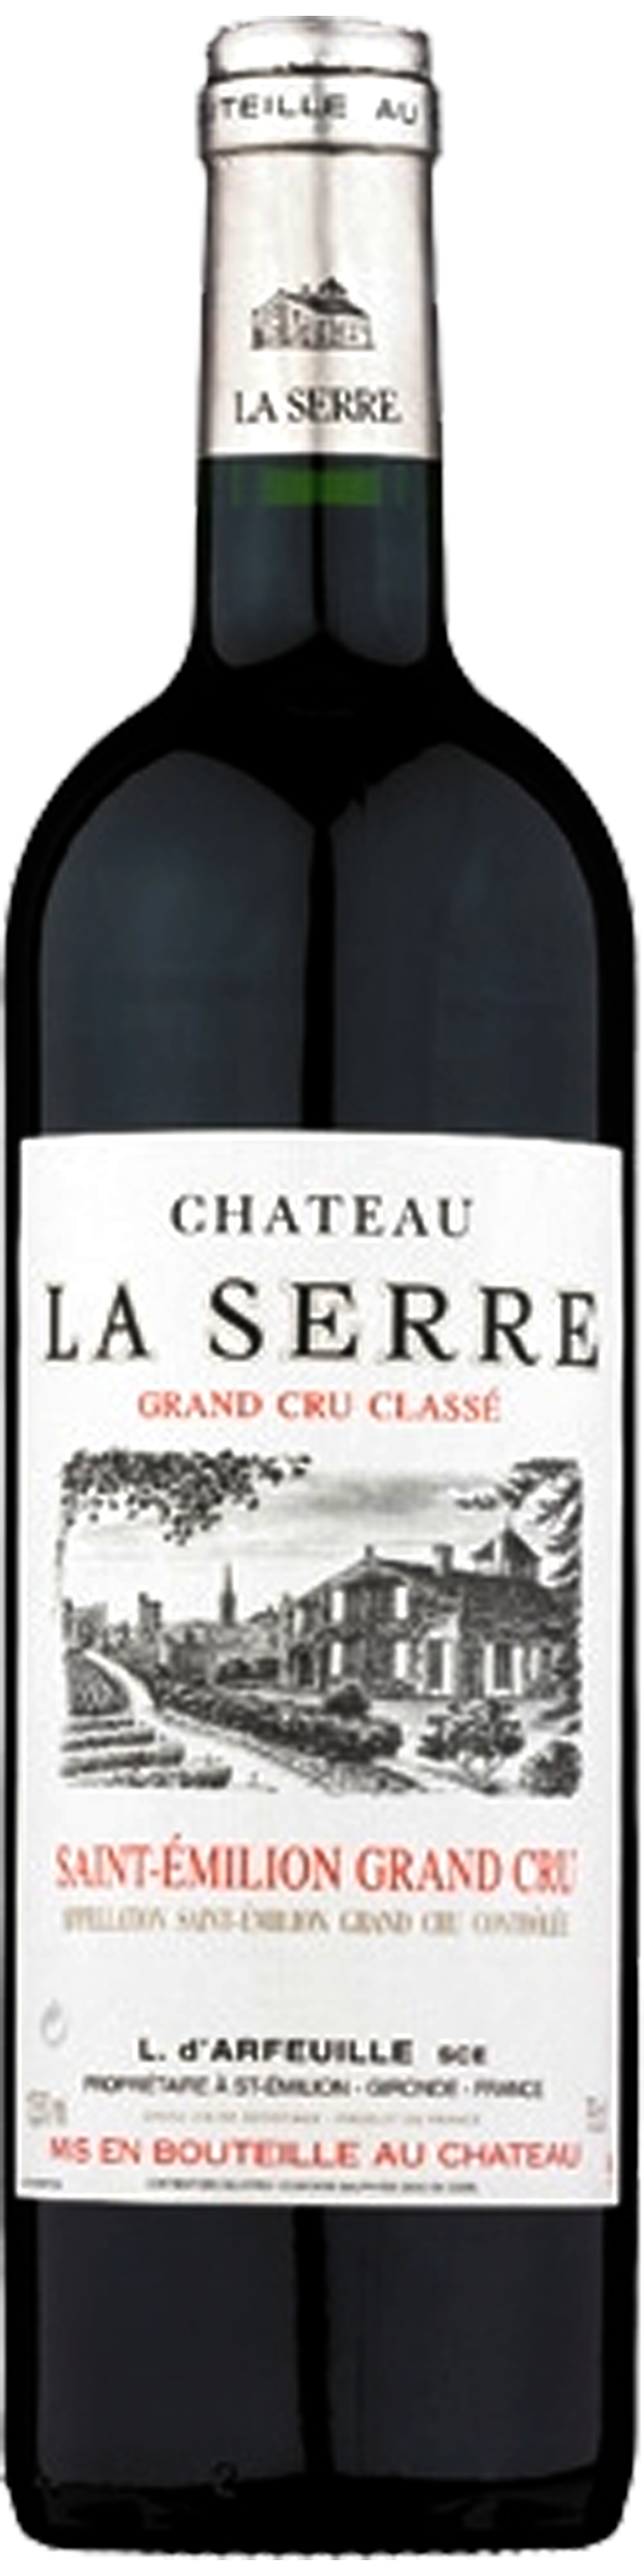 Bottle shot of 2008 Château La Serre, St Emilion Grand Cru Classe